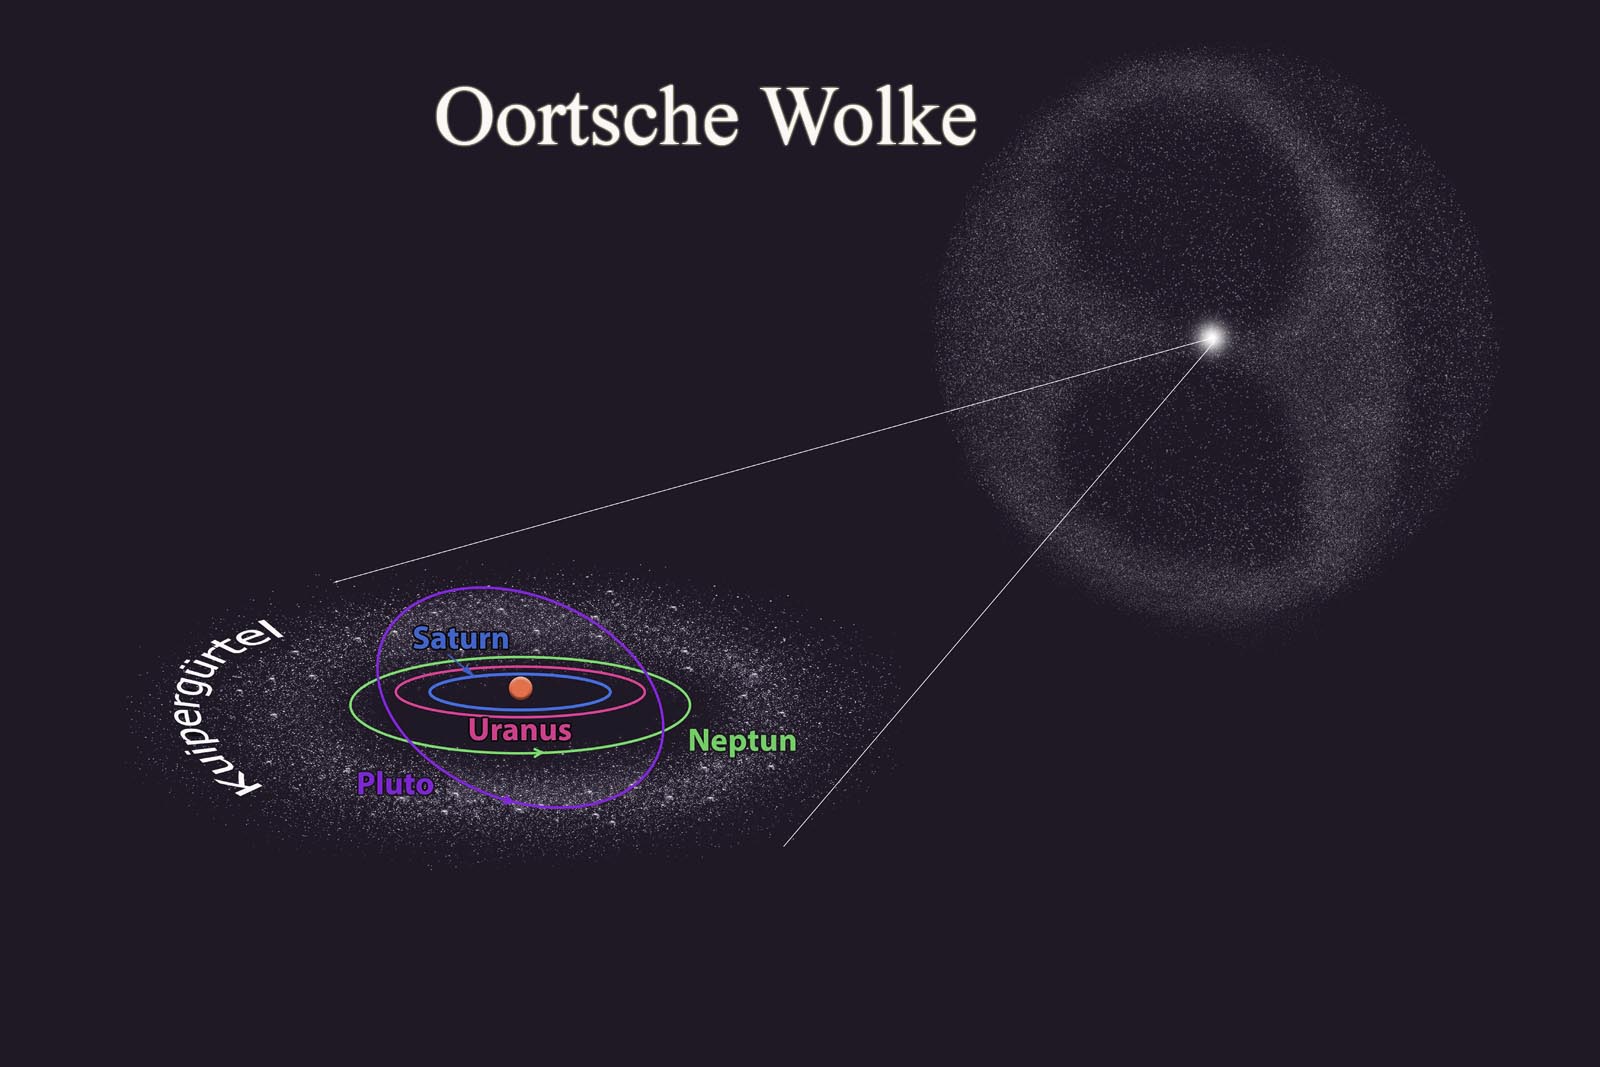 Die Oortsche Wolke 1